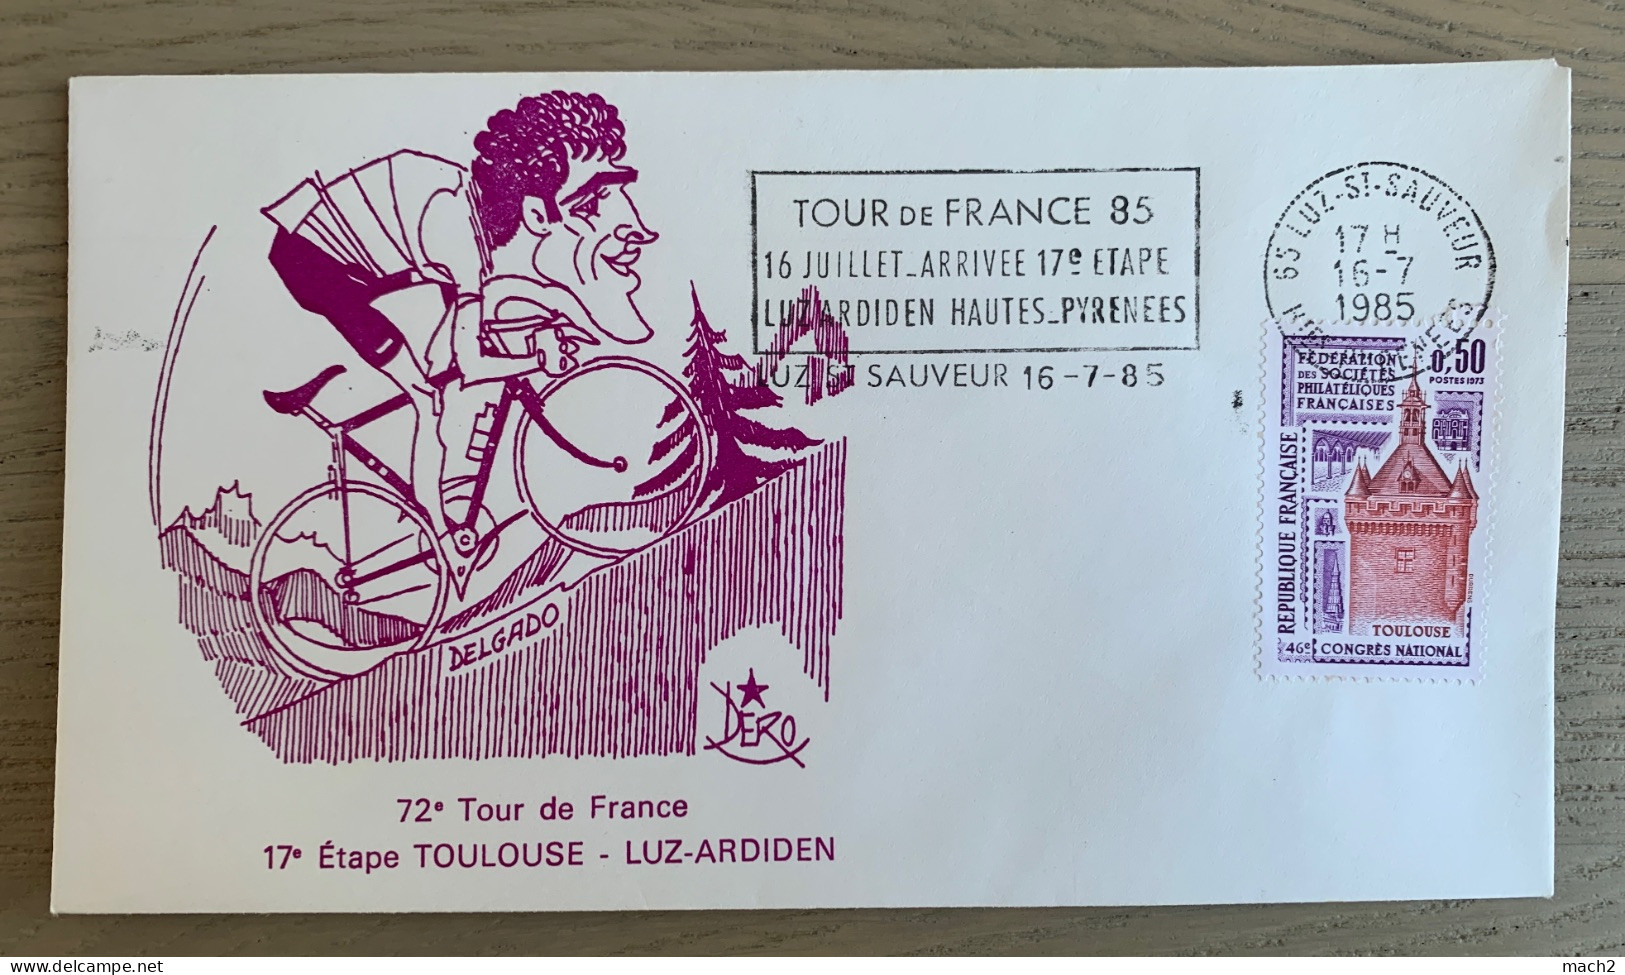 72ème Tour De France Cycliste 1985, 17ème étape, Flamme Illustrée LUZ SAINT SAUVEUR 16/7/1985 DELGADO DÉRO - Ciclismo